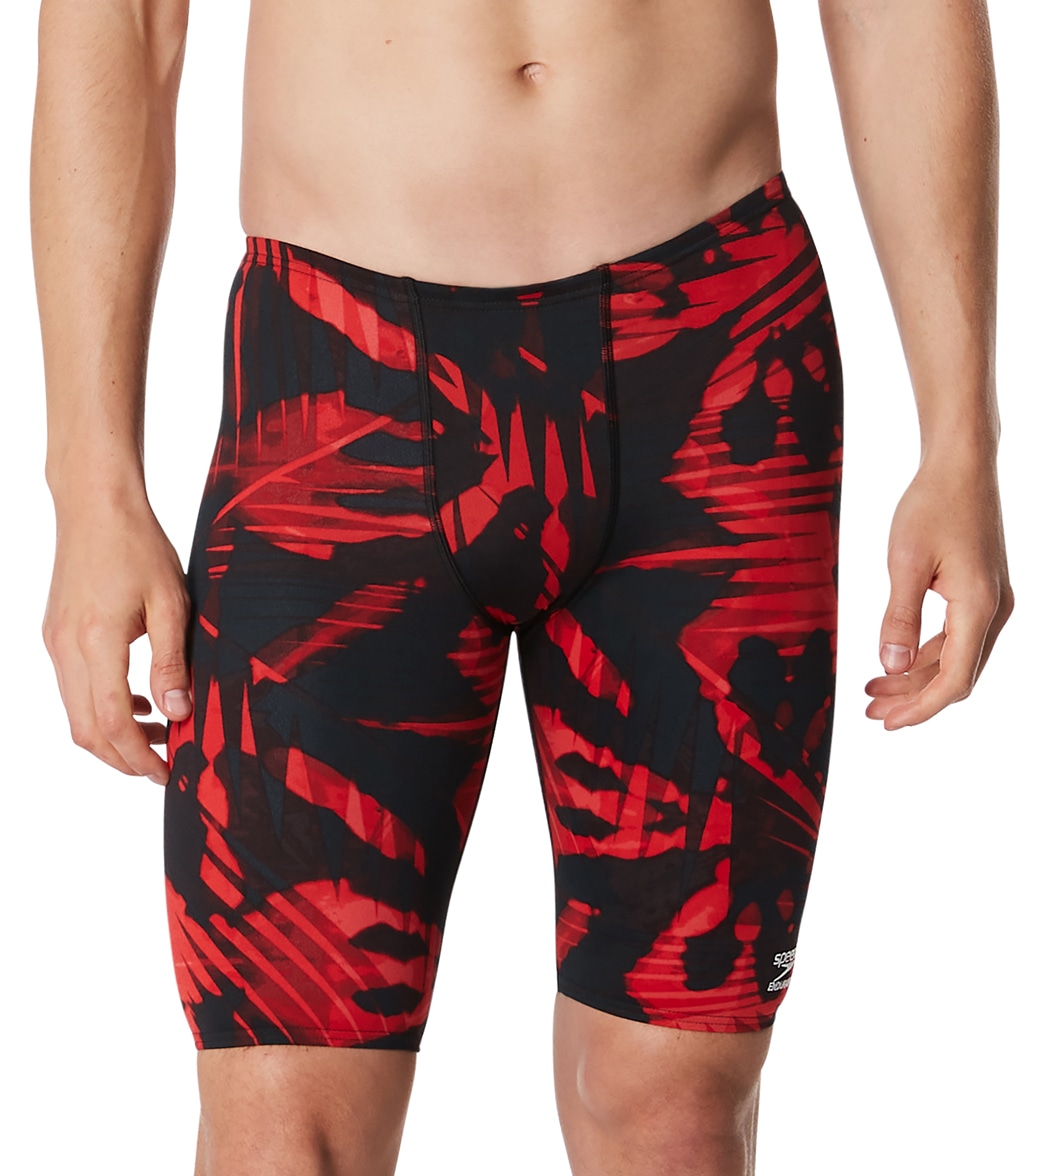 Speedo Men's Reflected Jammer Swimsuit - Red 24 - Swimoutlet.com